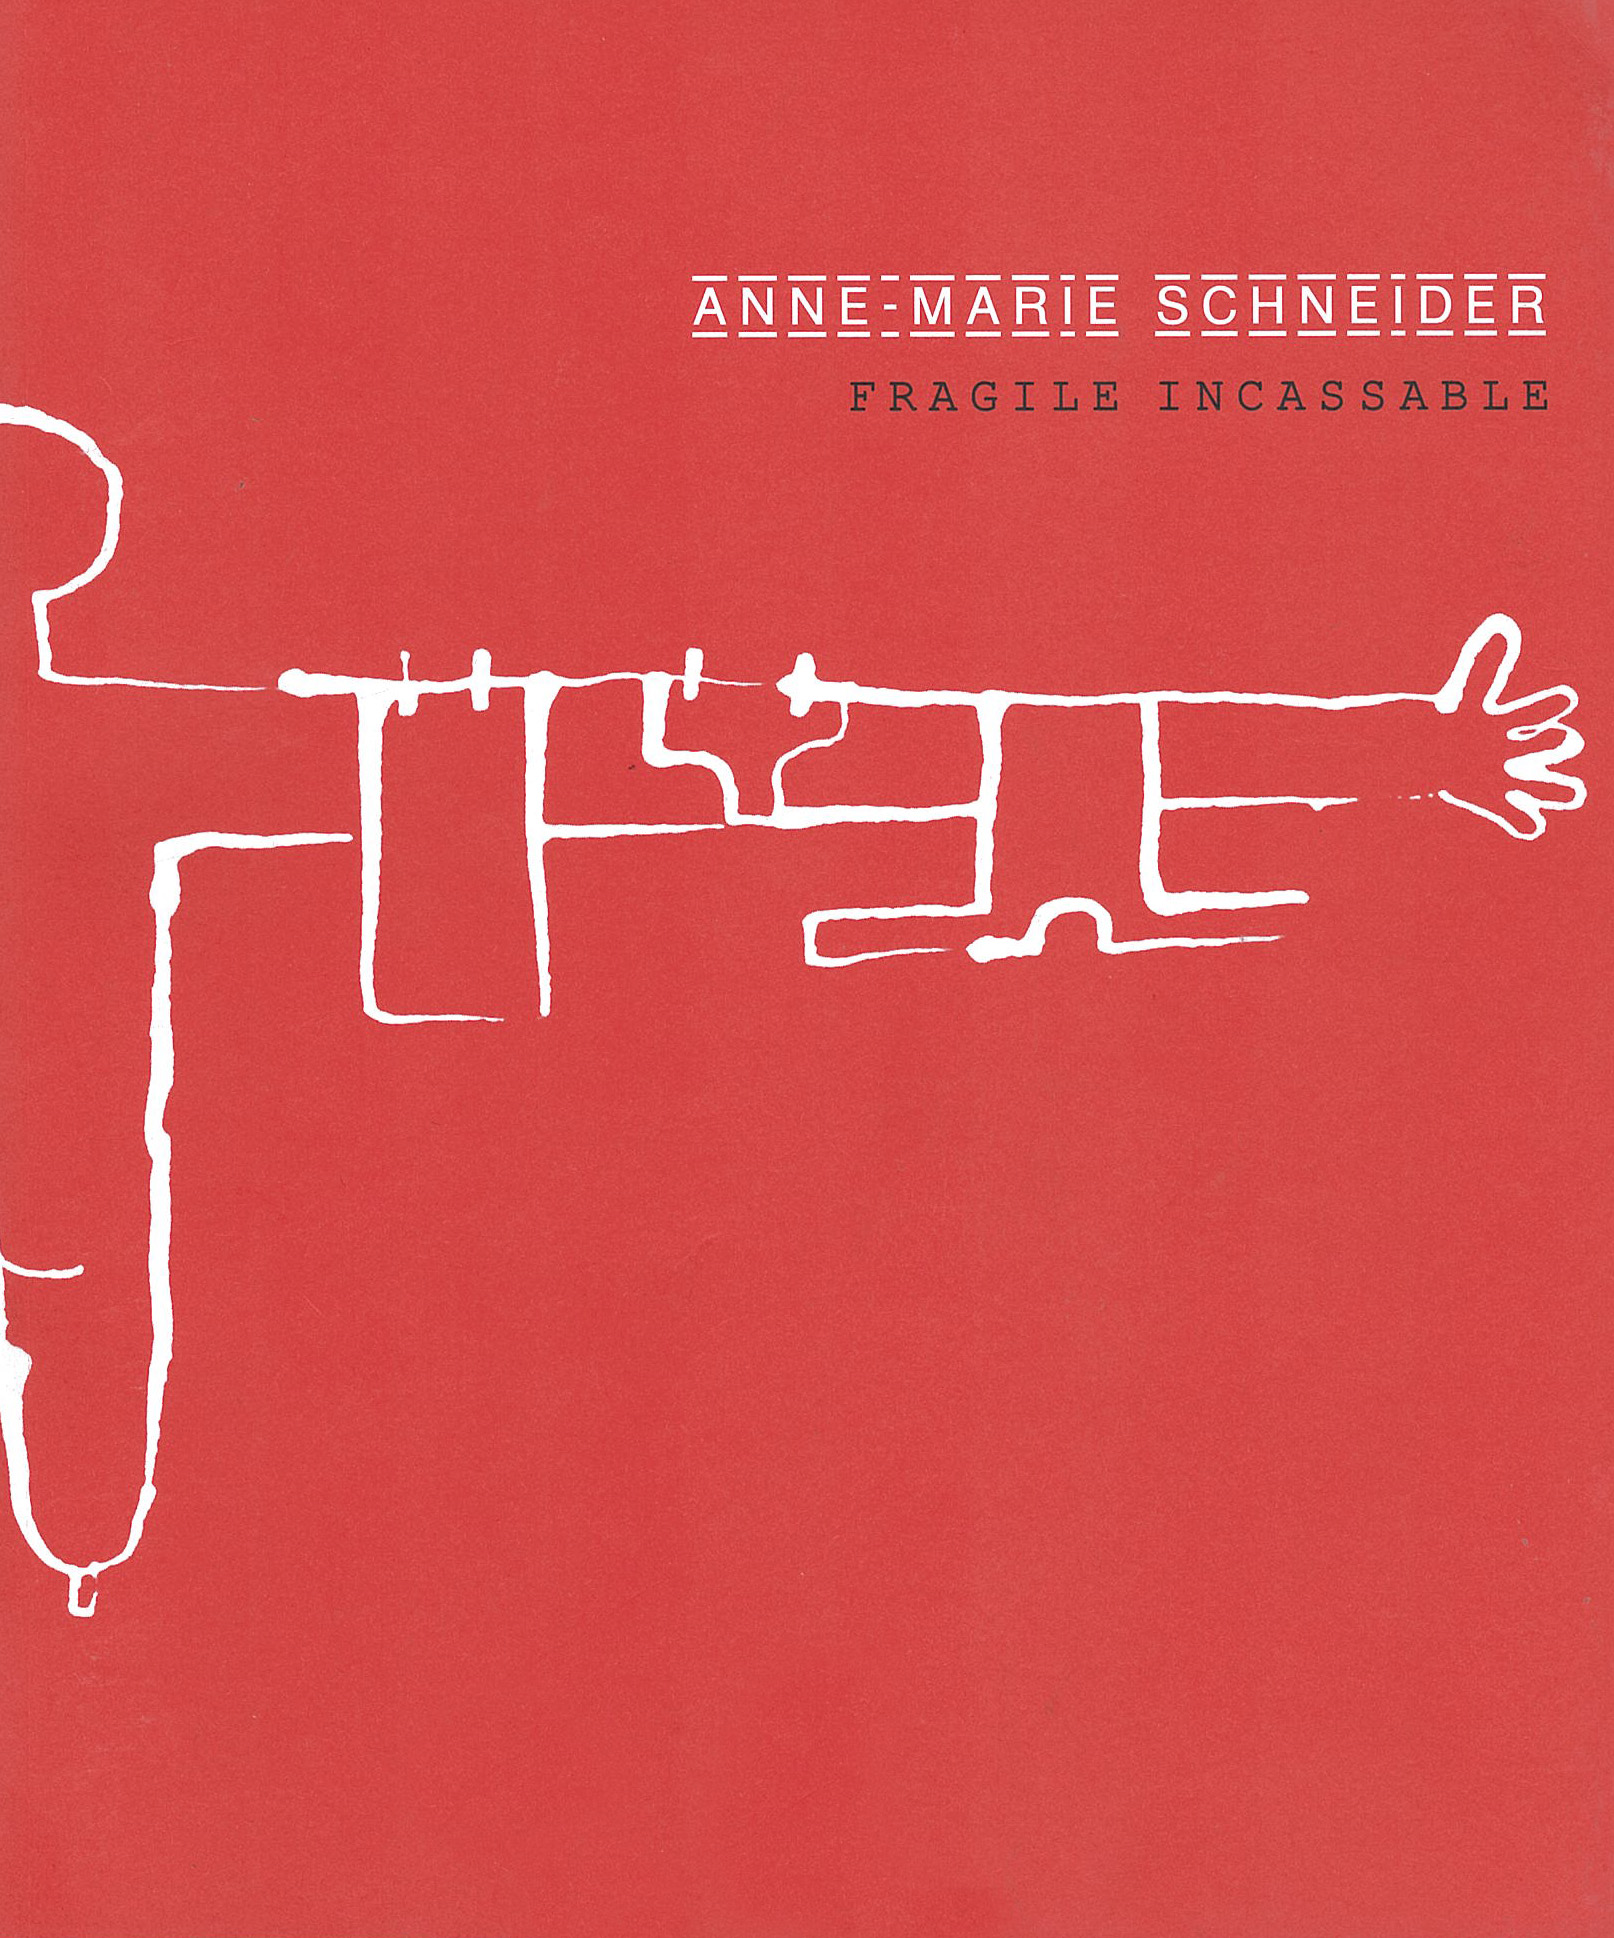 Anne-Marie Schneider - Fragile Incassable